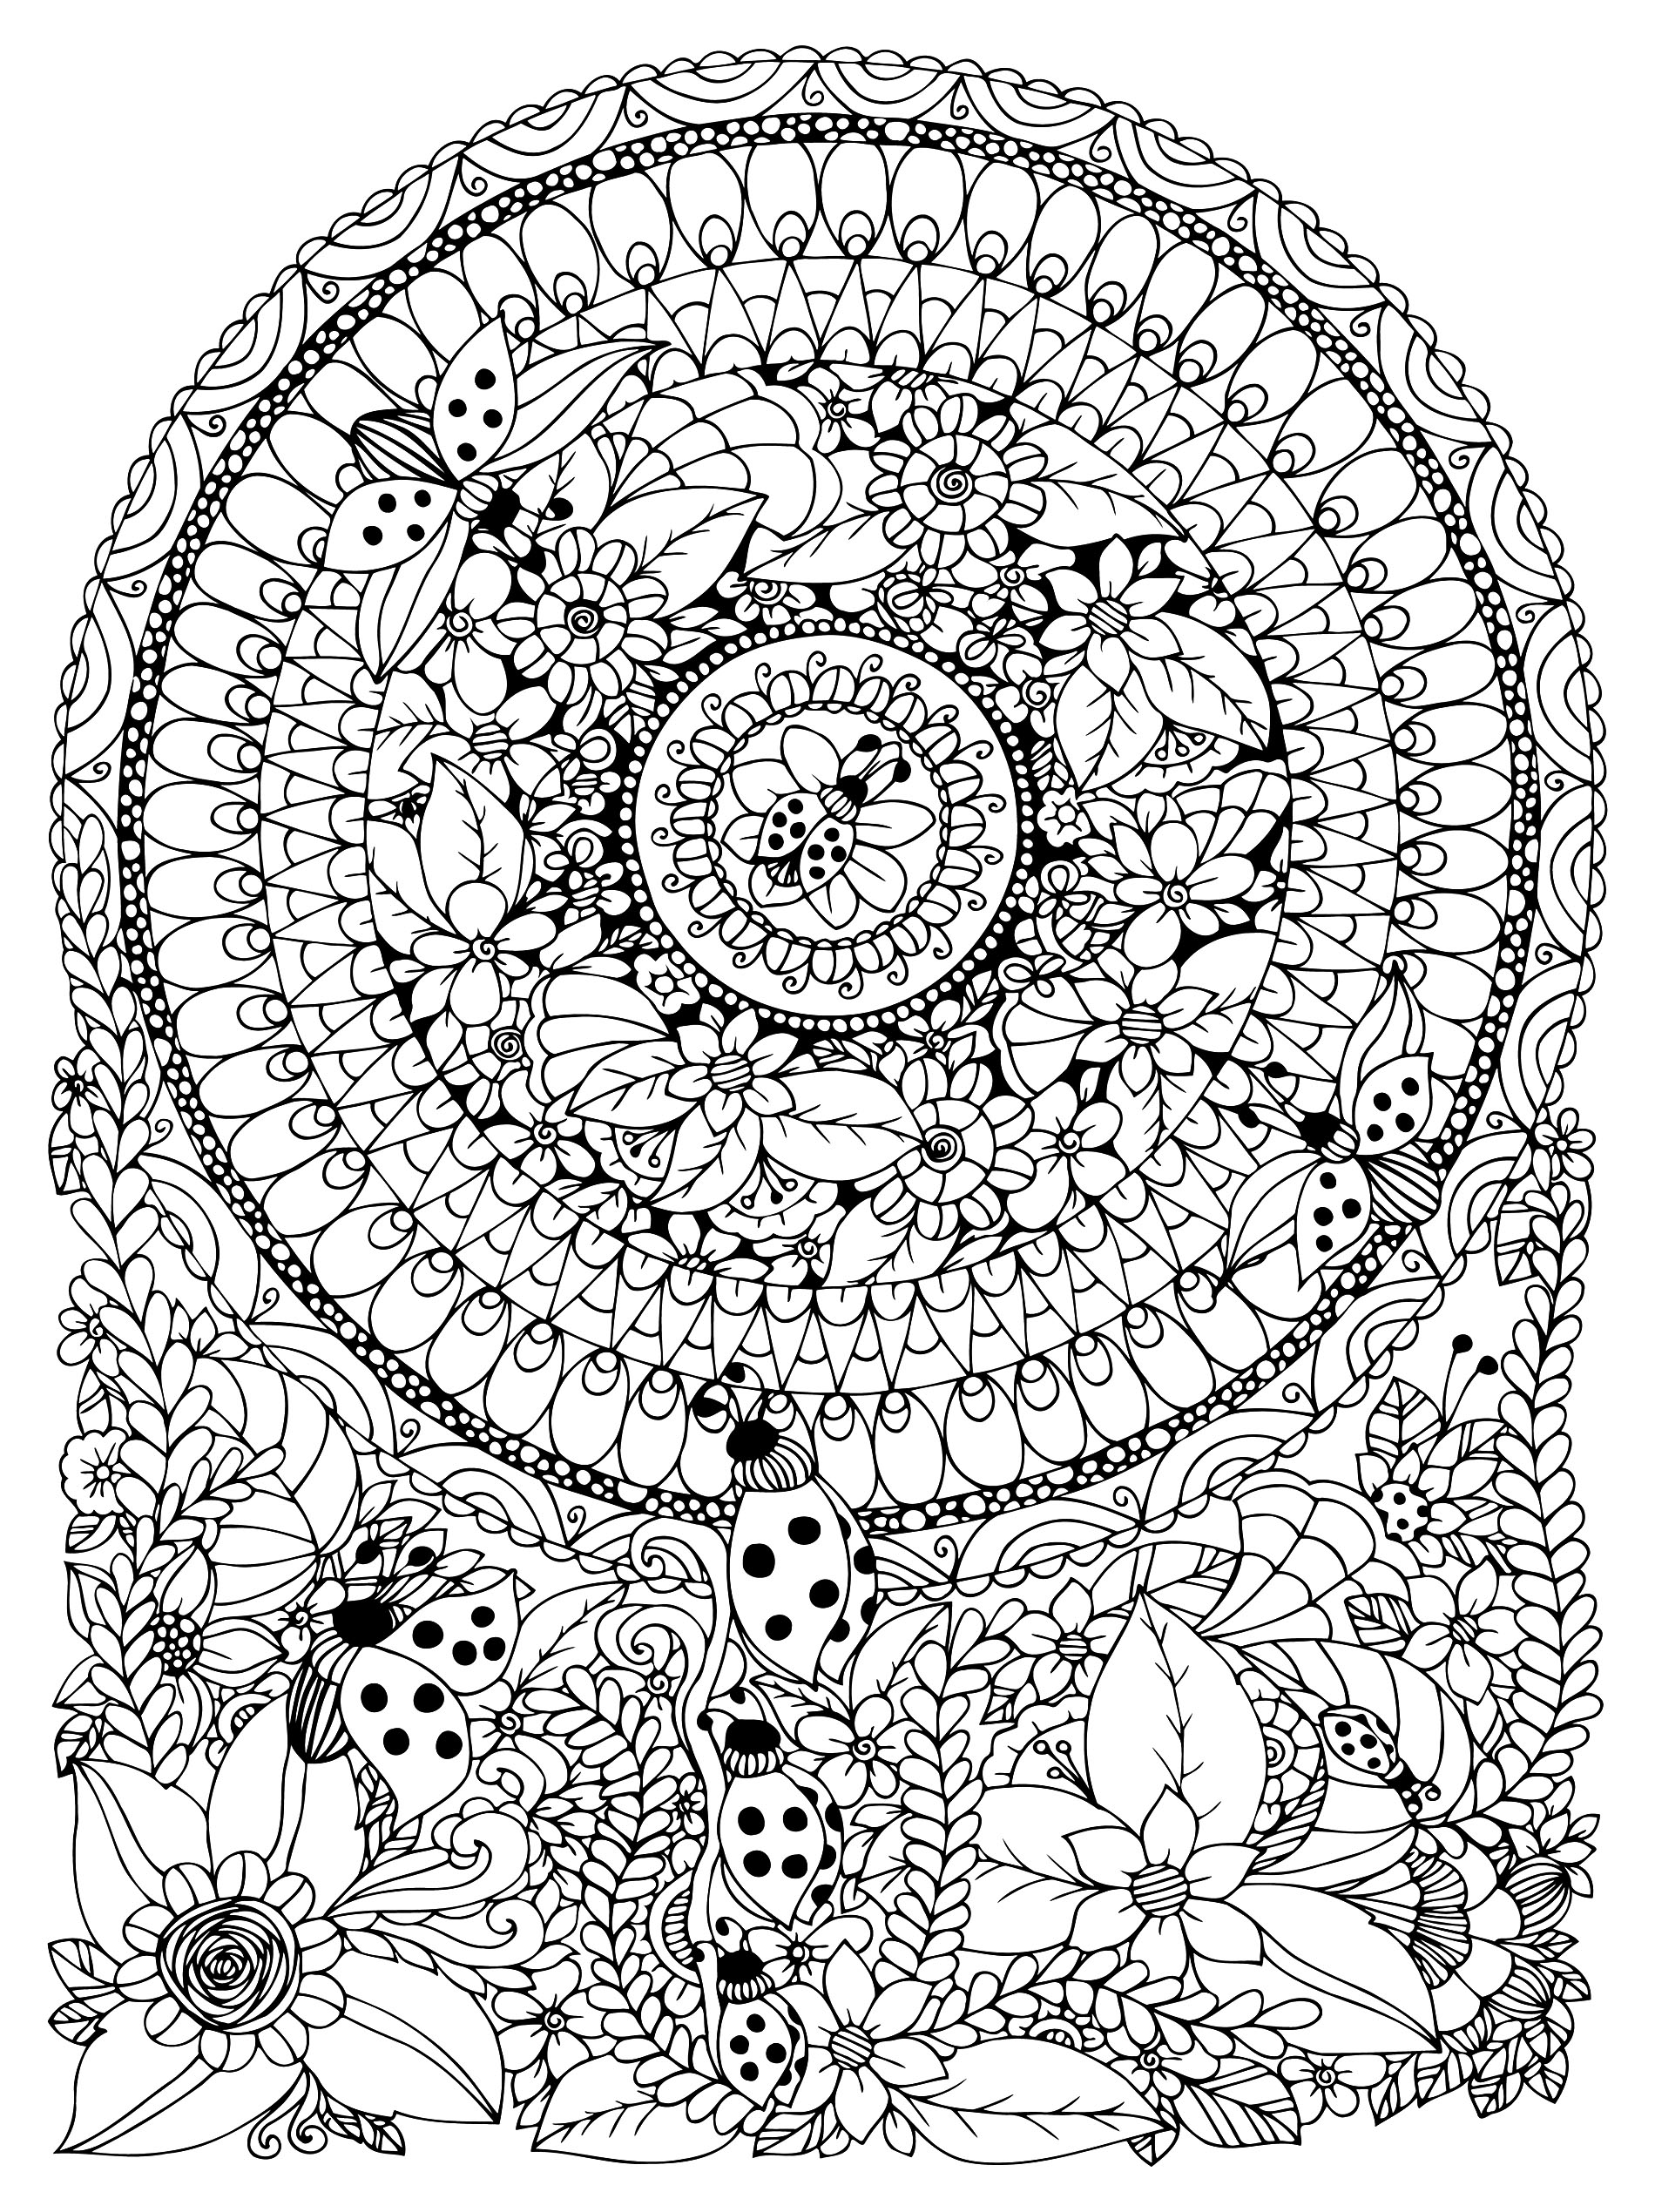 Mandala avec coccinelles et diverses fleurs et feuilles, Source : 123rf   Artiste : Tanvetka